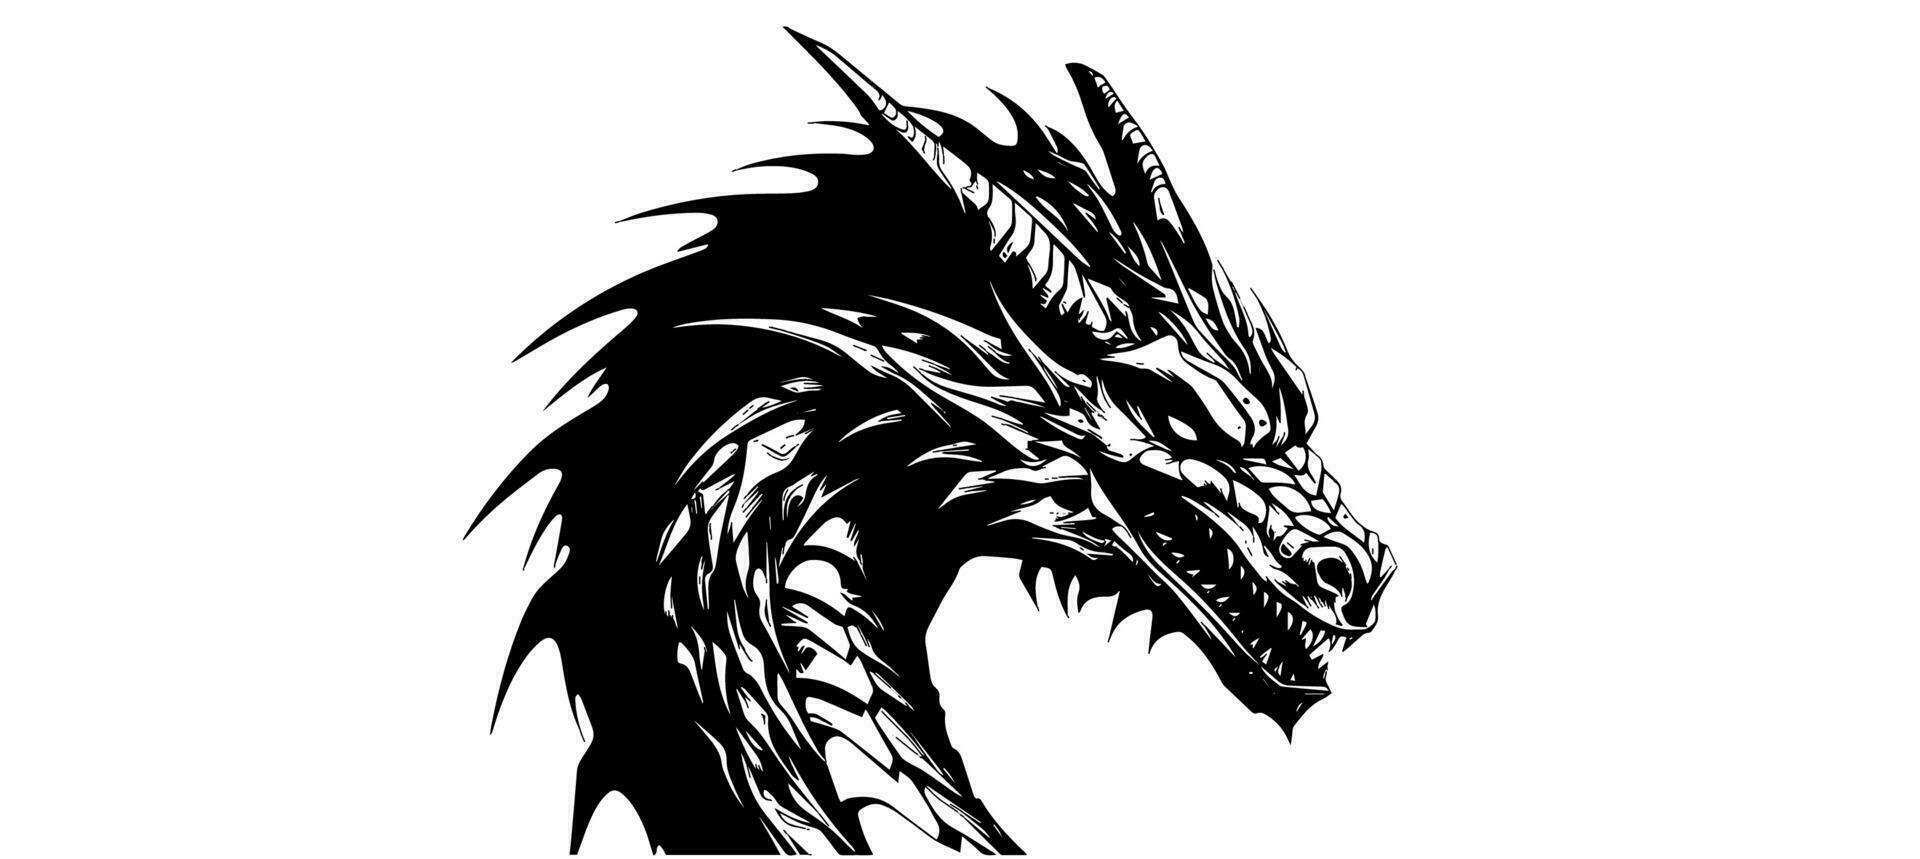 Grafik Silhouette von schwarz Drachen isoliert auf Weiß Hintergrund. Vektor Illustration .